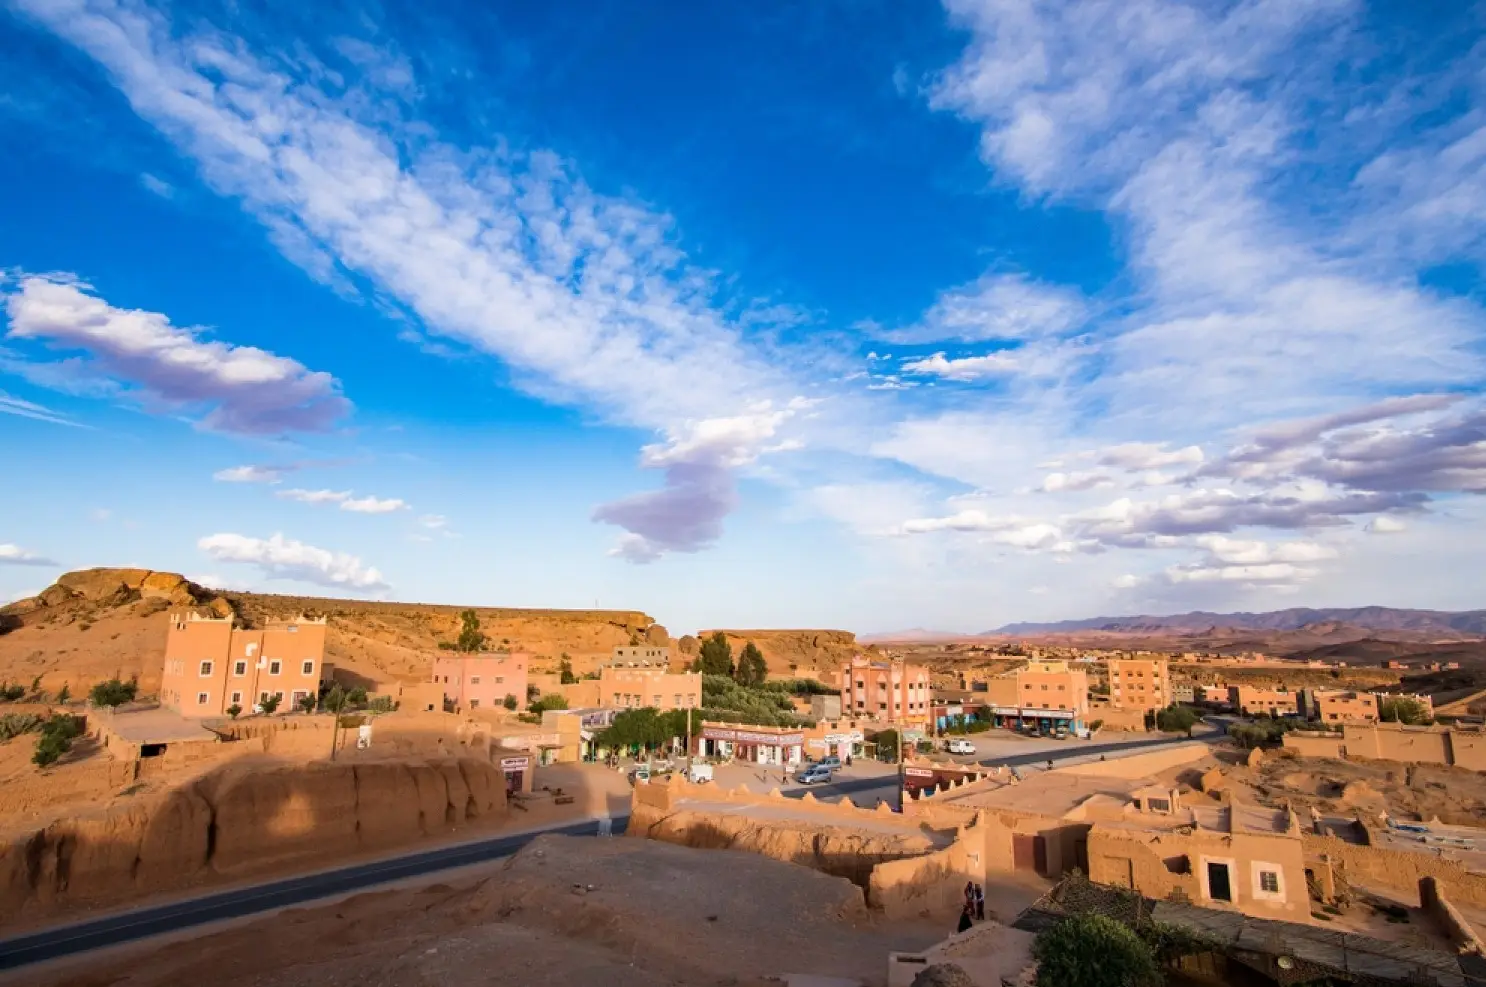 Day 4: Merzouga- Toudra gorges – Dades Gorges- Ouarzazate.